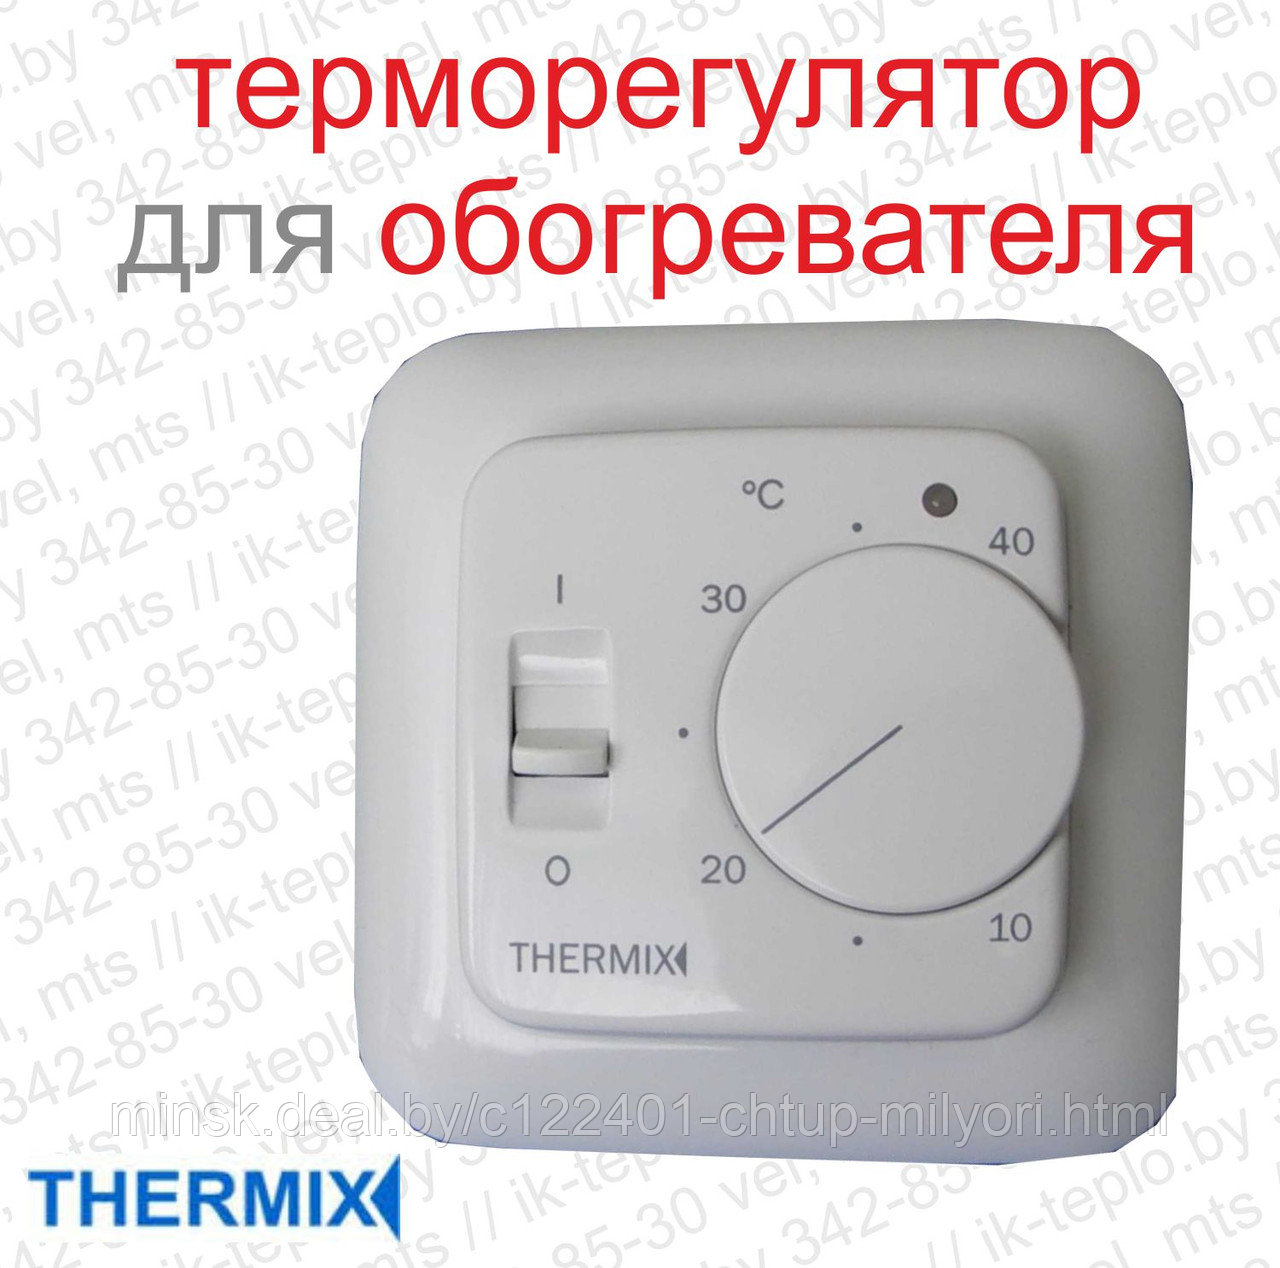 Где Купить Терморегулятор Для Обогревателя В Новосибирске